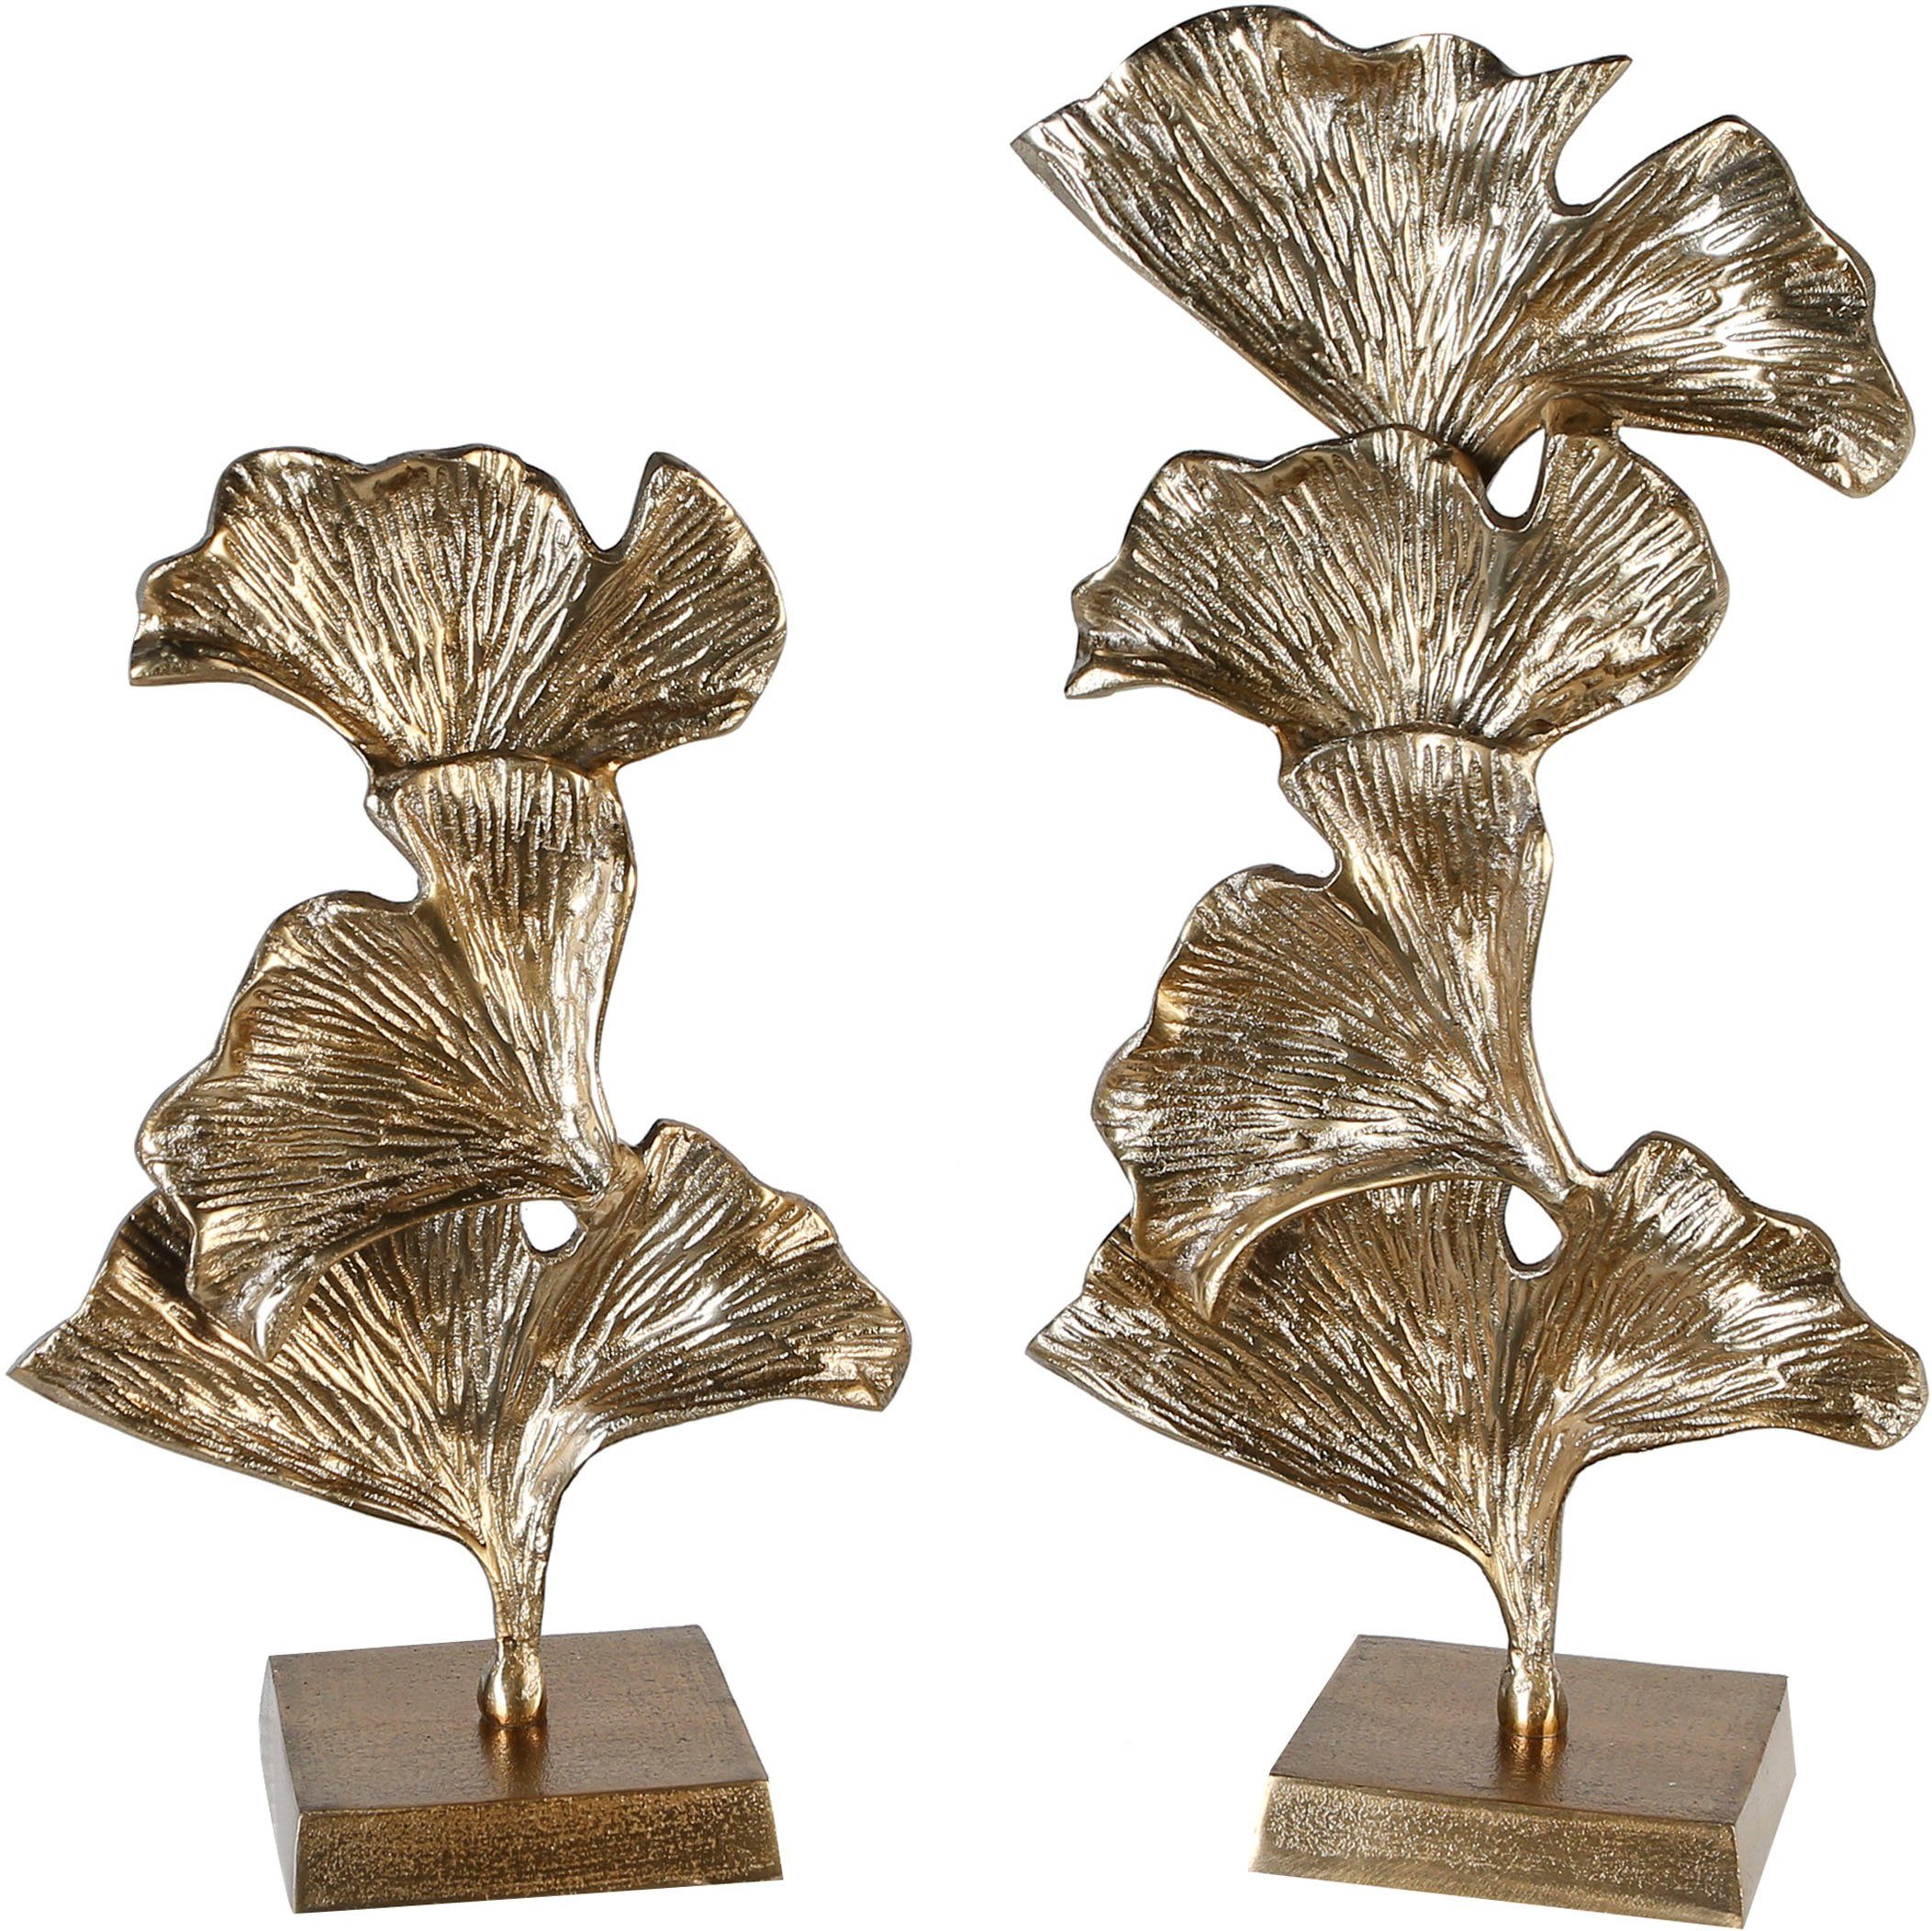 GILDE Deco-object Sculptuur ginkgo, goud van metaal, te bestellen in 2 maten, woonkamer (1 stuk)